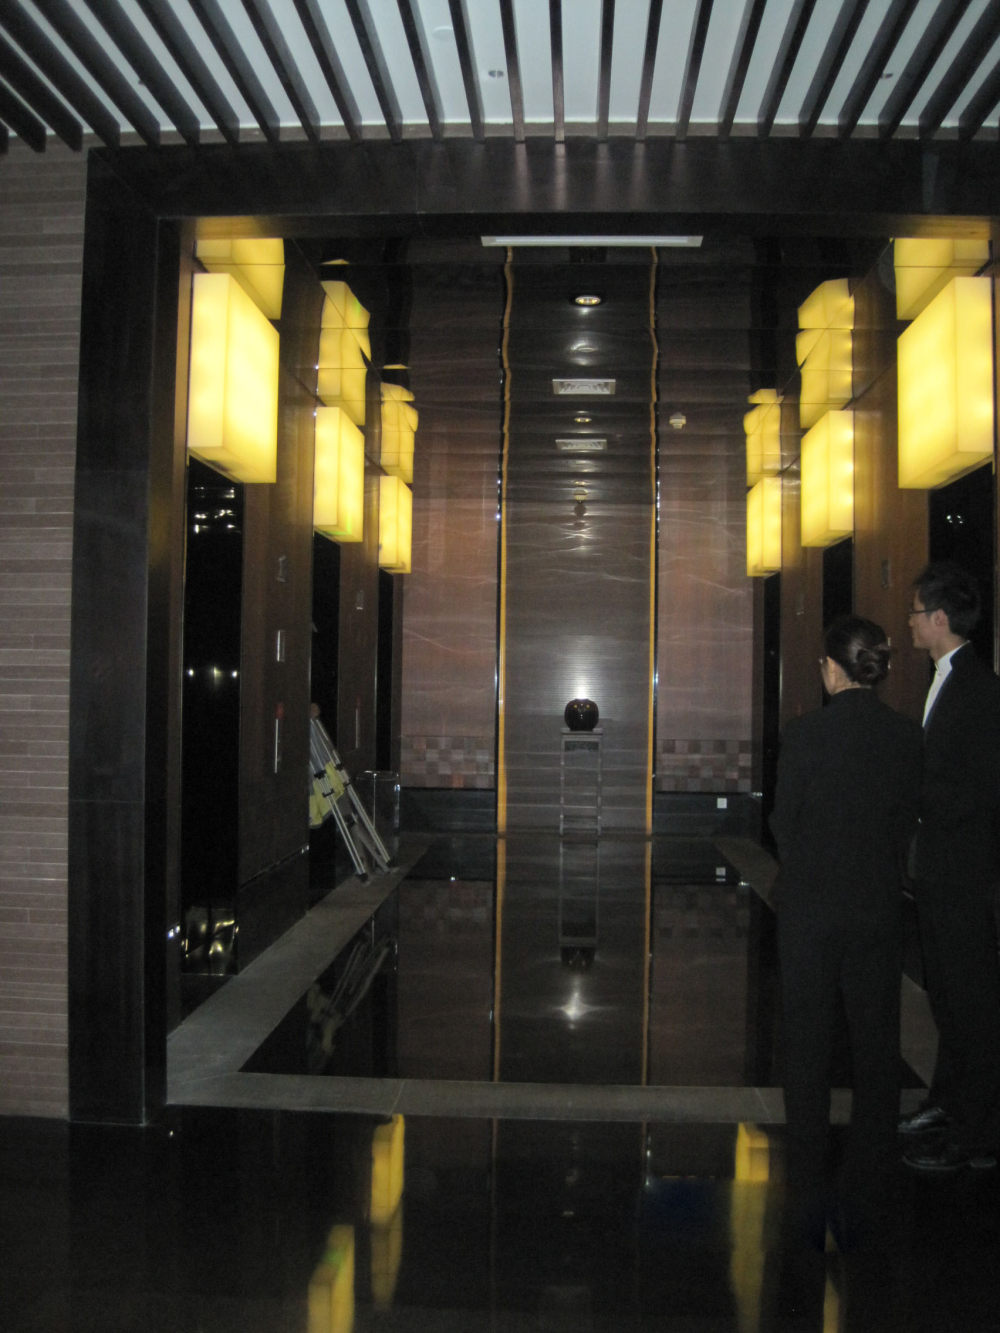 上海浦东卓美亚喜马拉雅酒店7.13第二页更新_IMG_1155.JPG